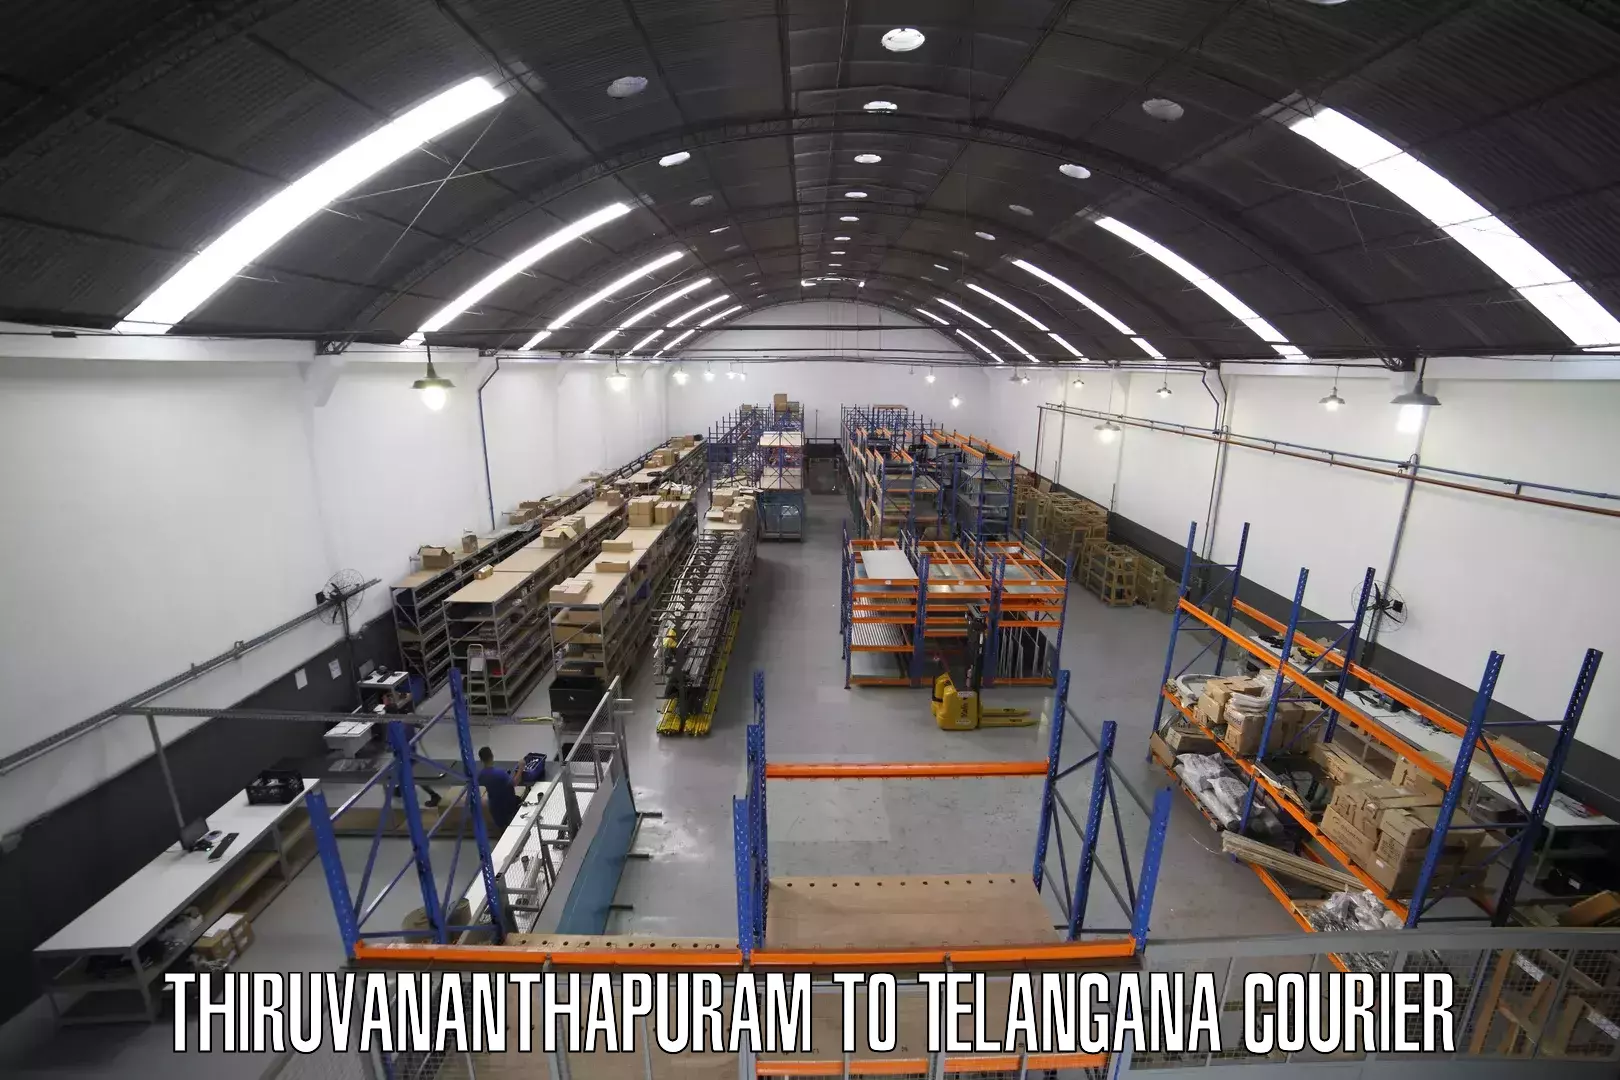 User-friendly delivery service Thiruvananthapuram to Bhainsa